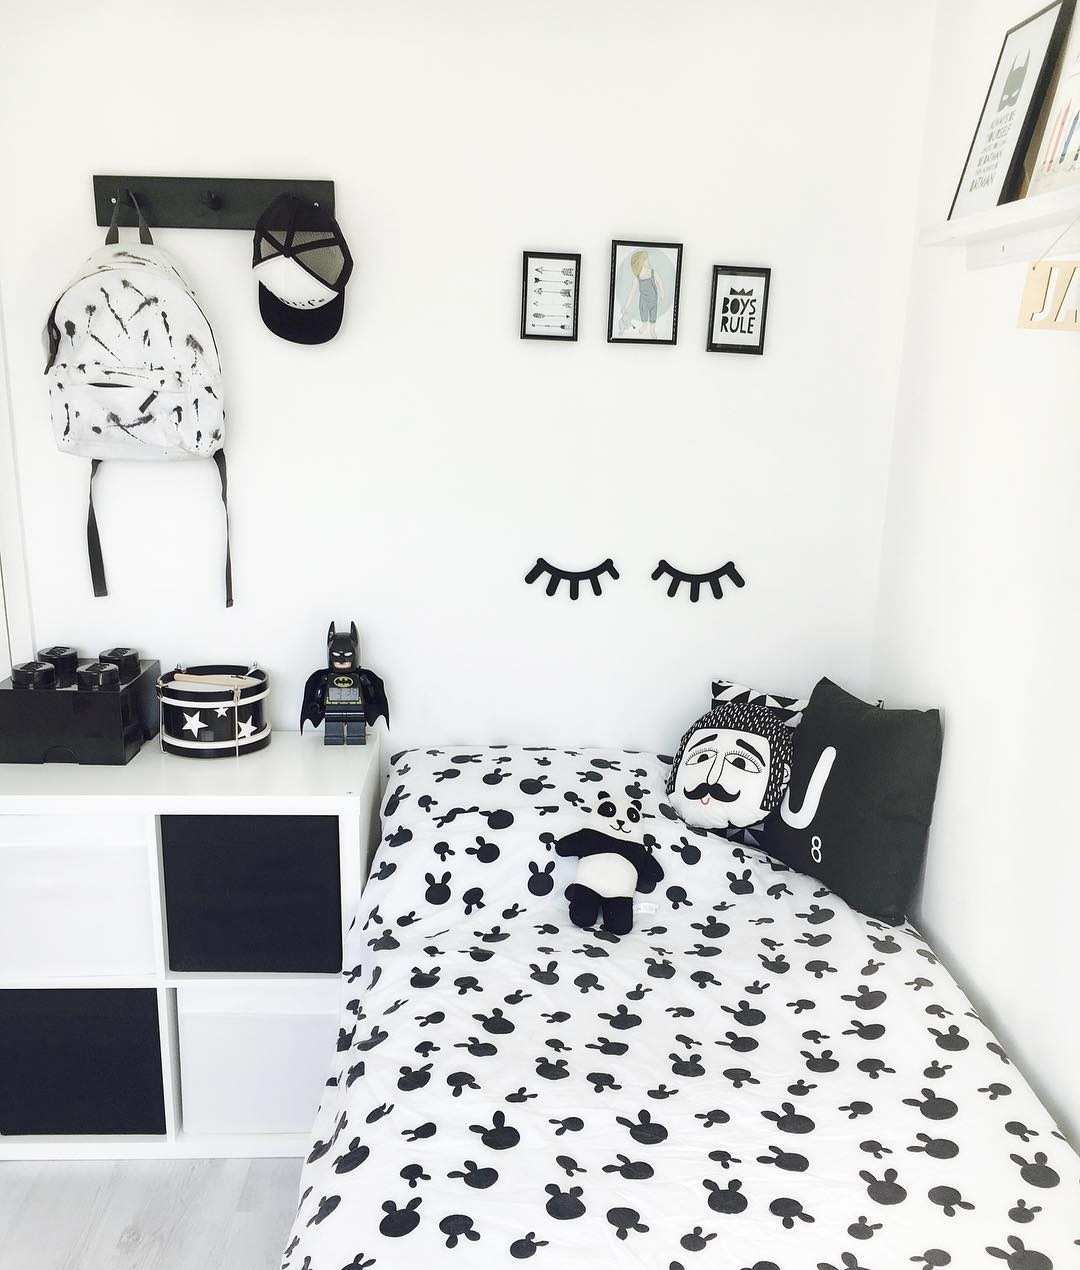 tapete dinding kamar hitam putih,weiß,schwarz und weiß,schwarz,monochrome fotografie,schlafzimmer